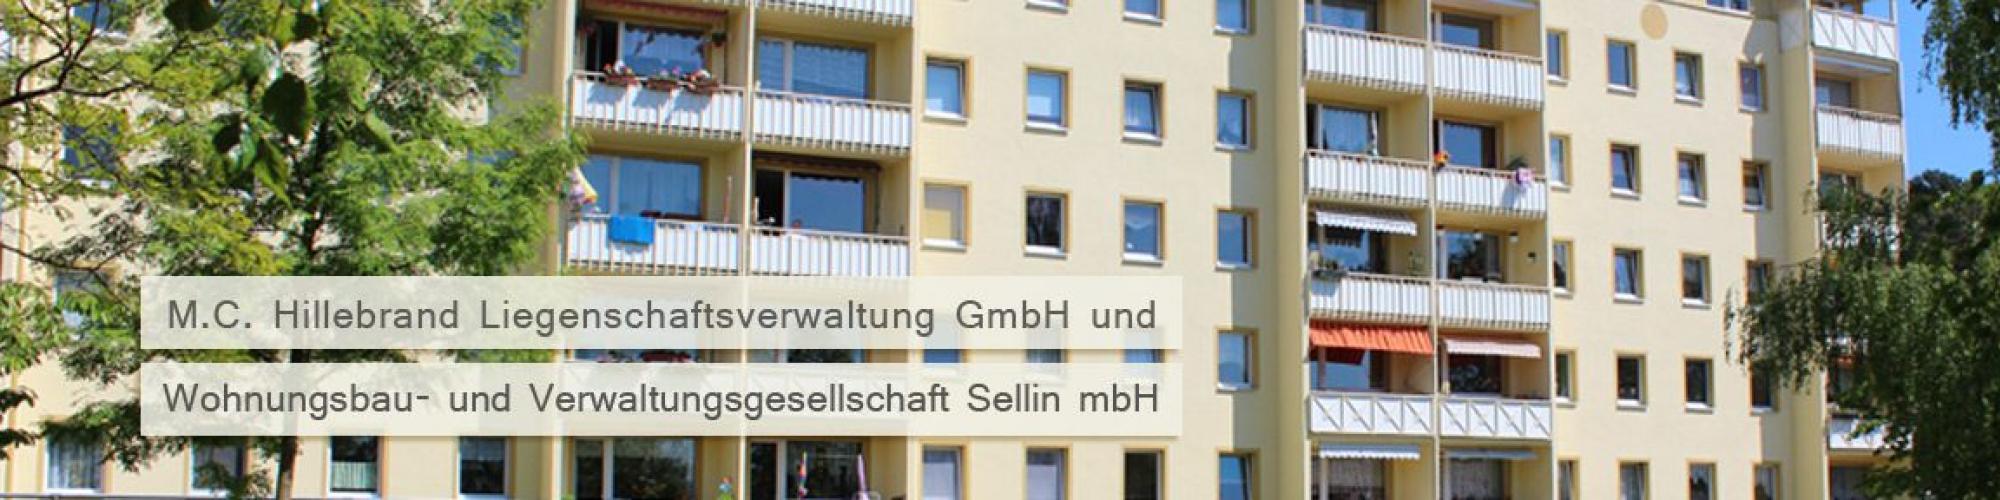 M.C. Hillebrand Liegenschaftsverwaltung GmbH